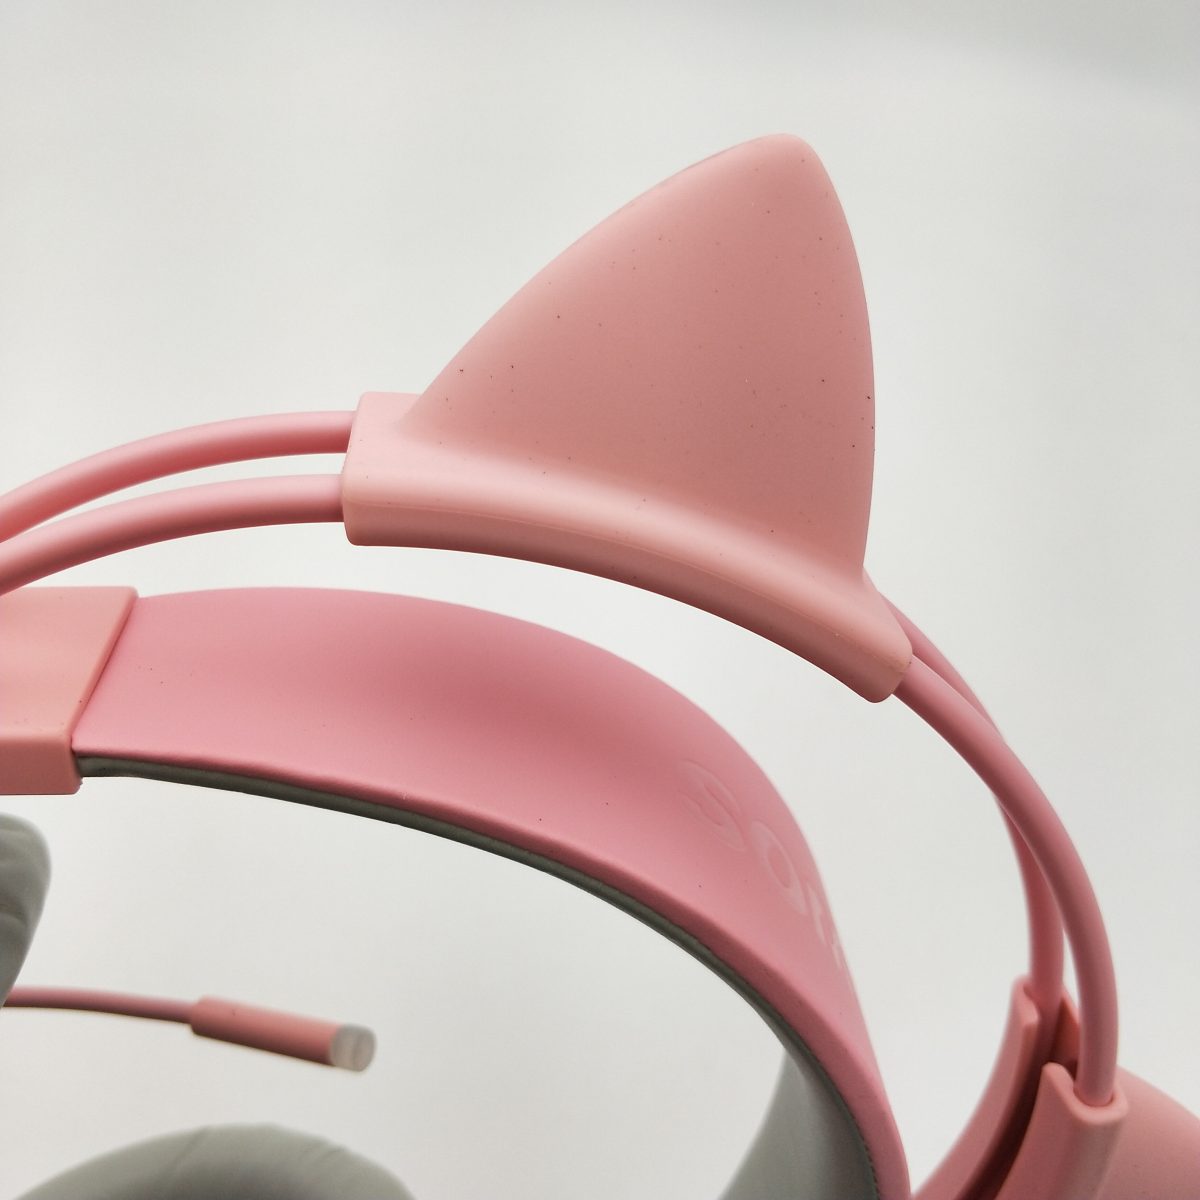 超萌系電競耳機!PINK貓耳耳機(電競版)完整開箱，讓女友一起加入戰場吧! - 7.1多聲道 - 敗家達人推薦